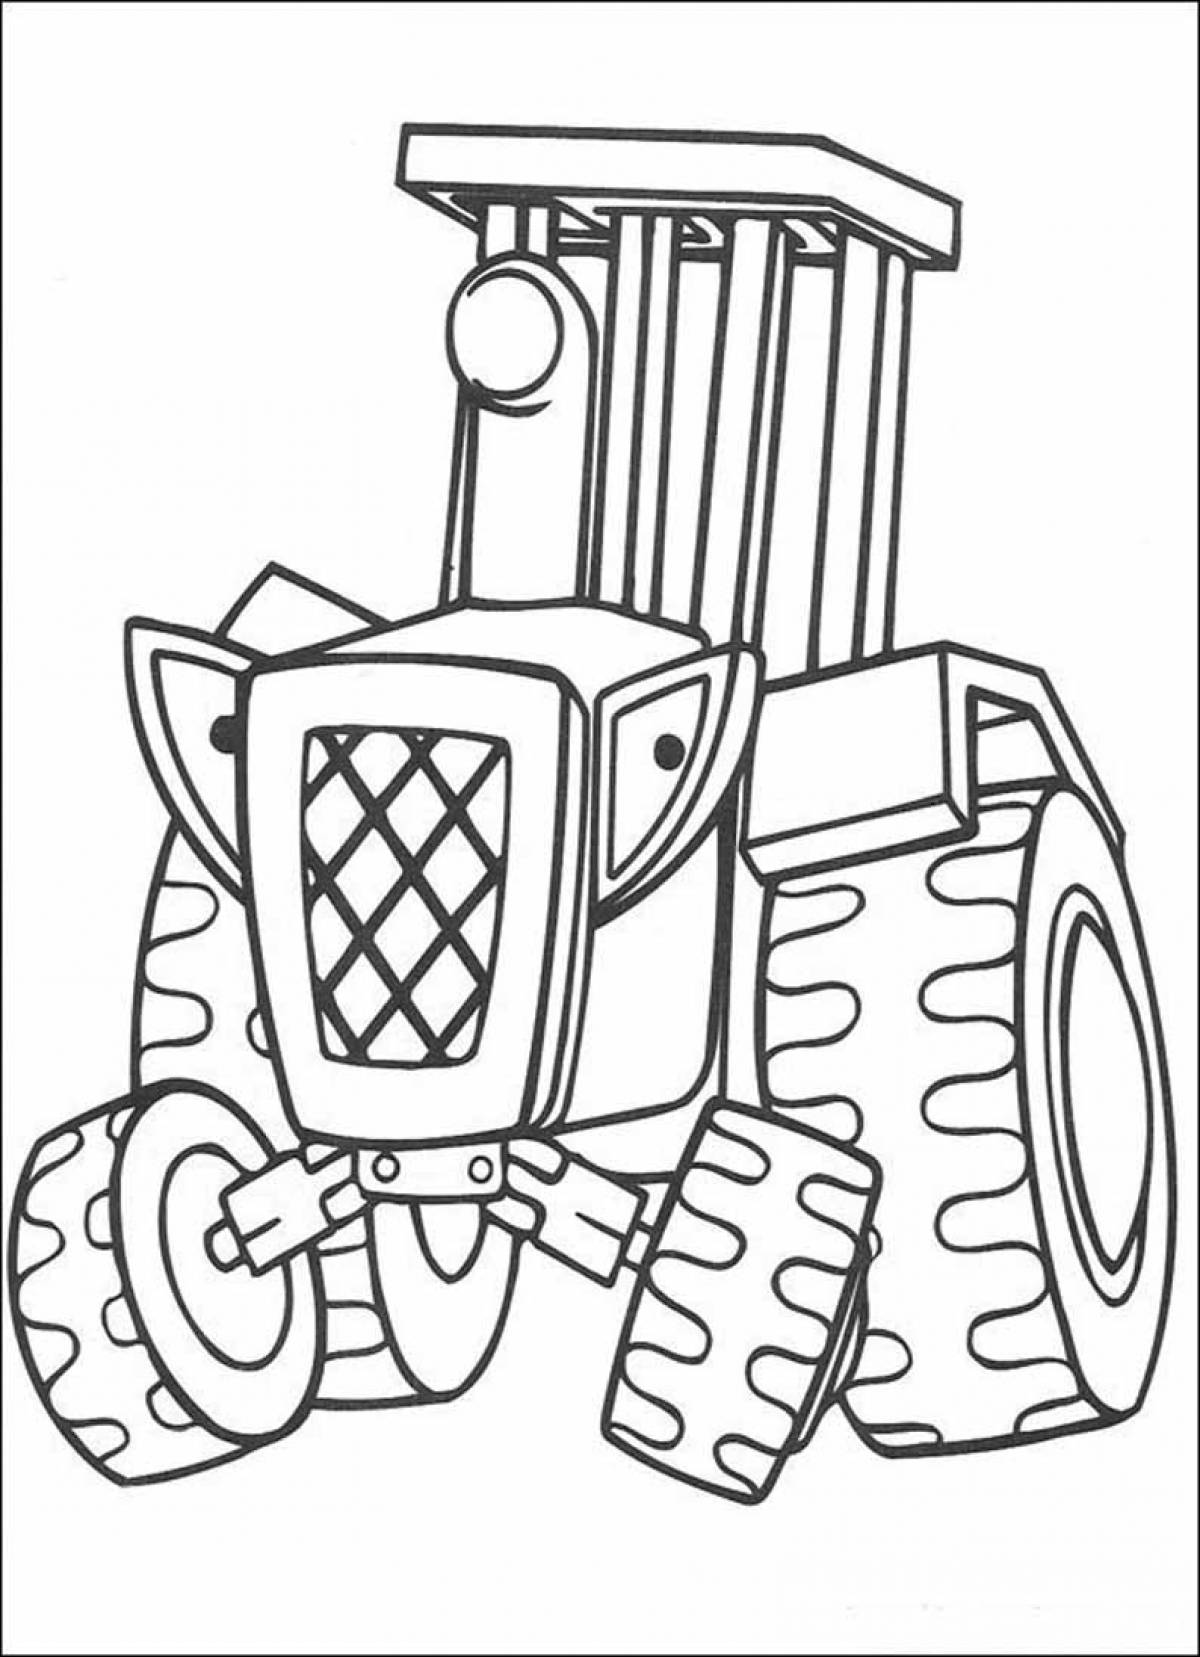 Трактор раскраска для детей 7 лет. Боб Строитель раскраска. Раскраска трактор. Трактор для раскрашивания детям. Раскраска для малышей. Трактор.